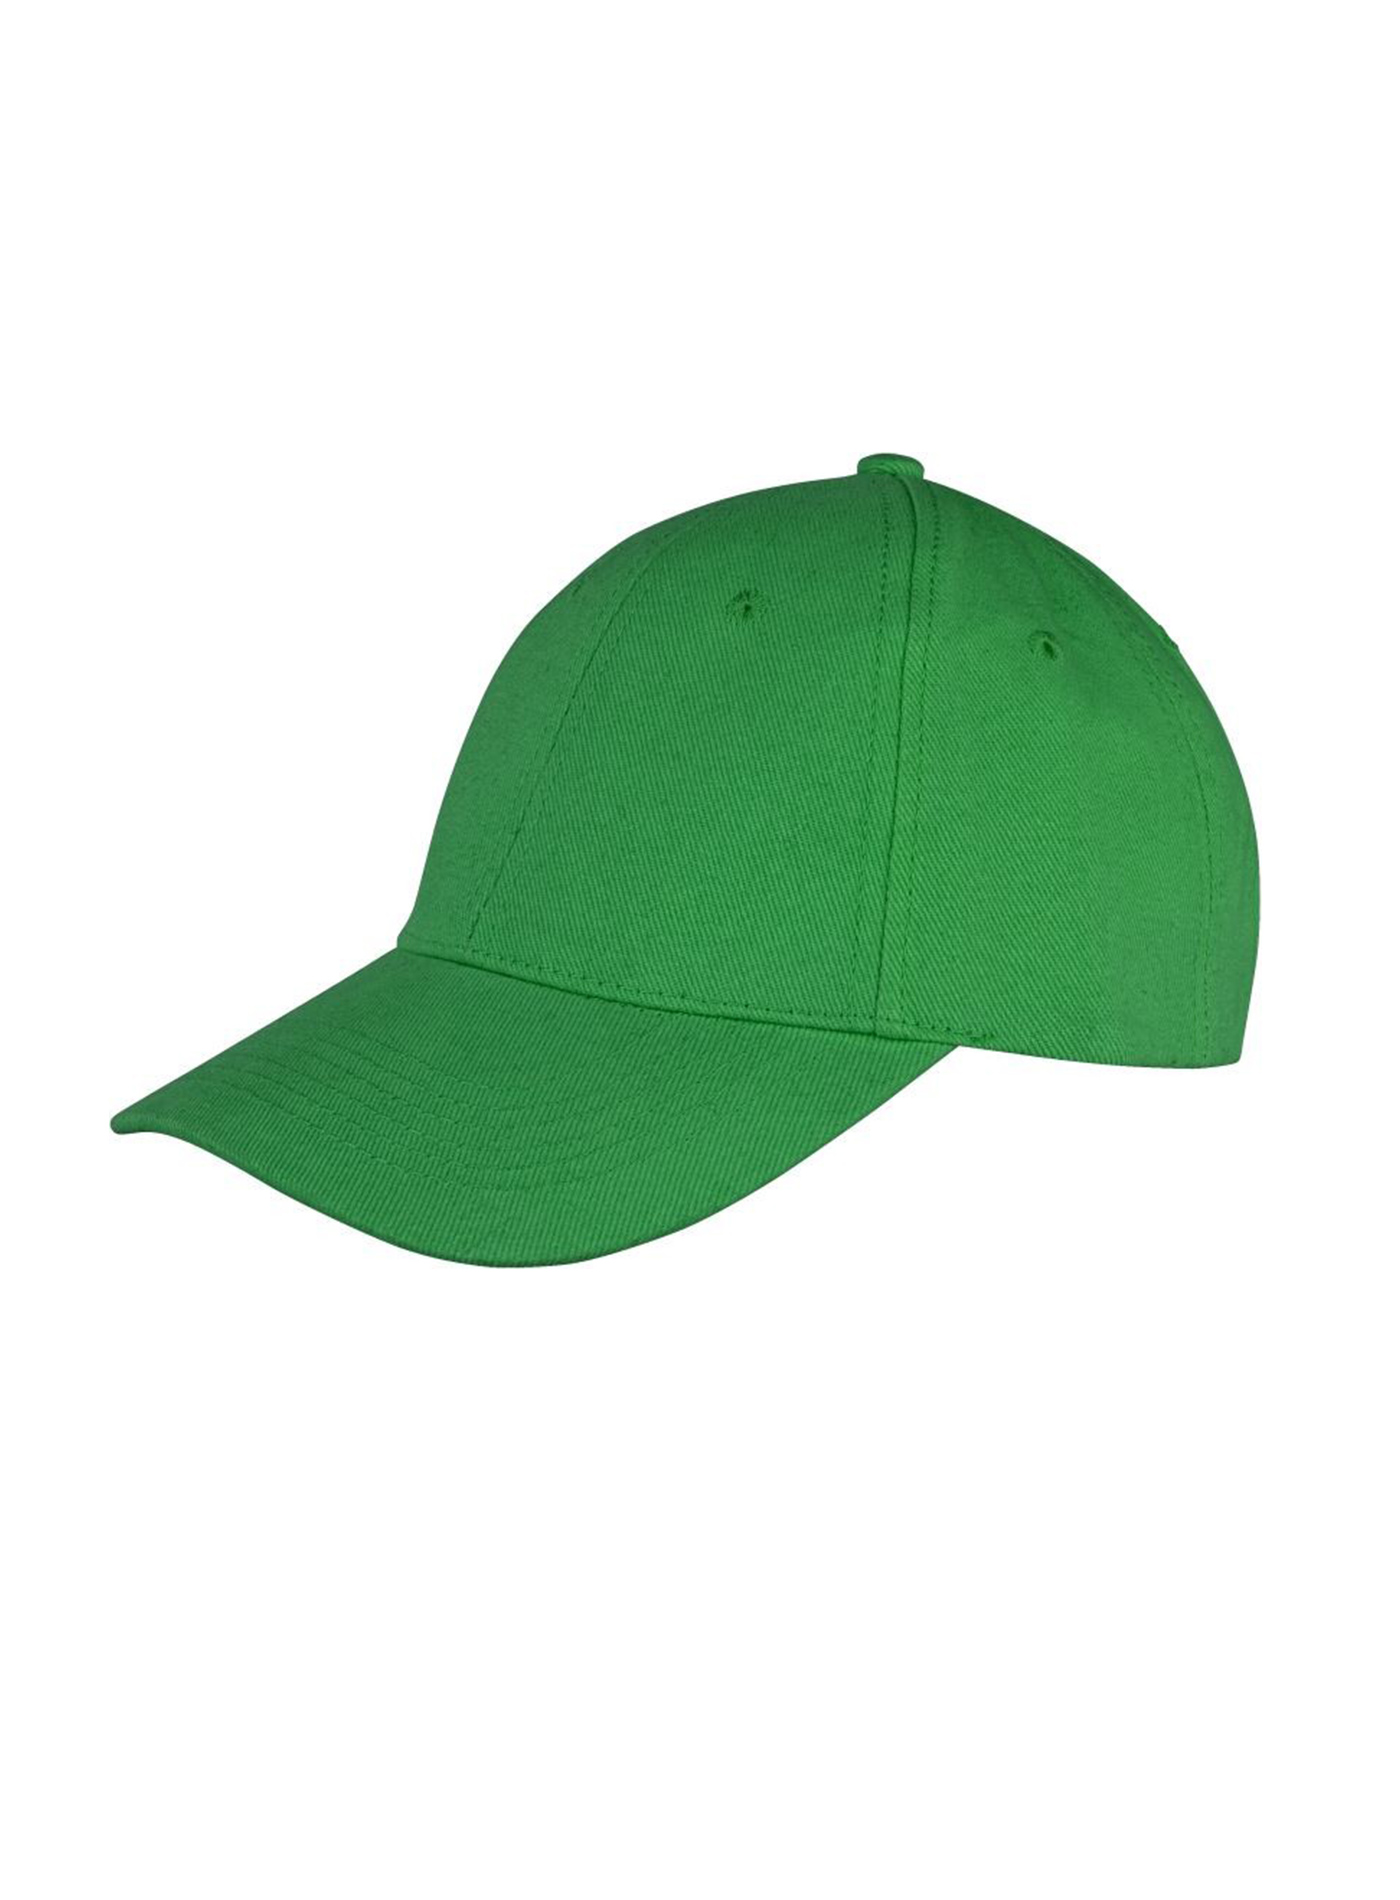 Kšiltovka Result headwear s nízkým profilem - Zelená univerzal